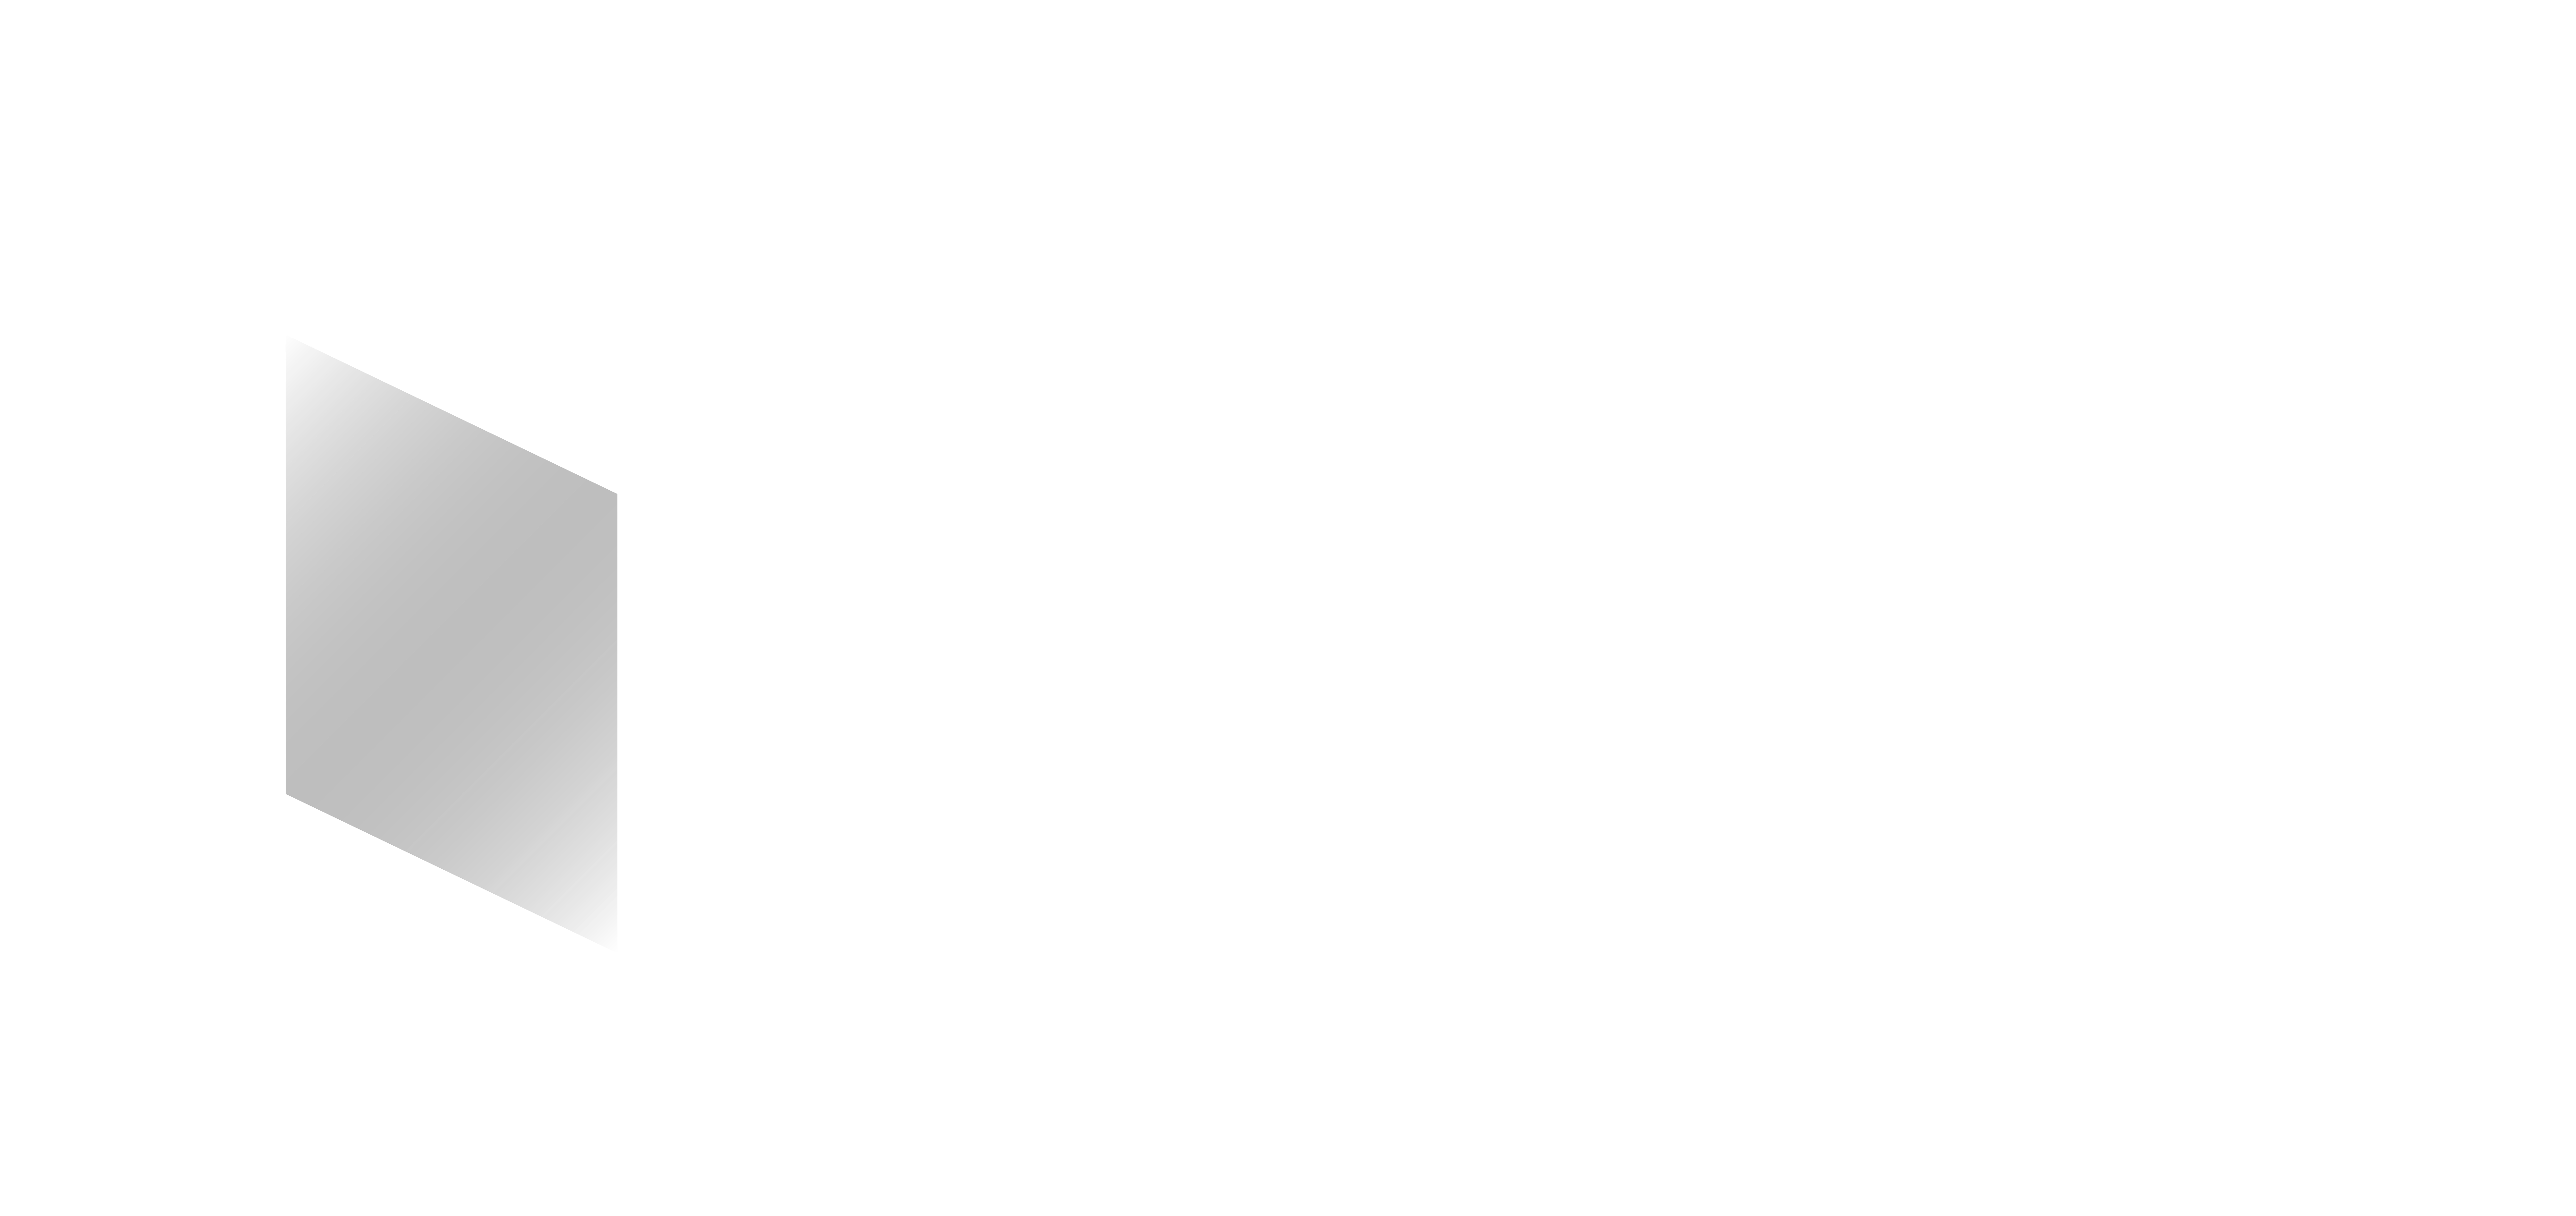 United Metals